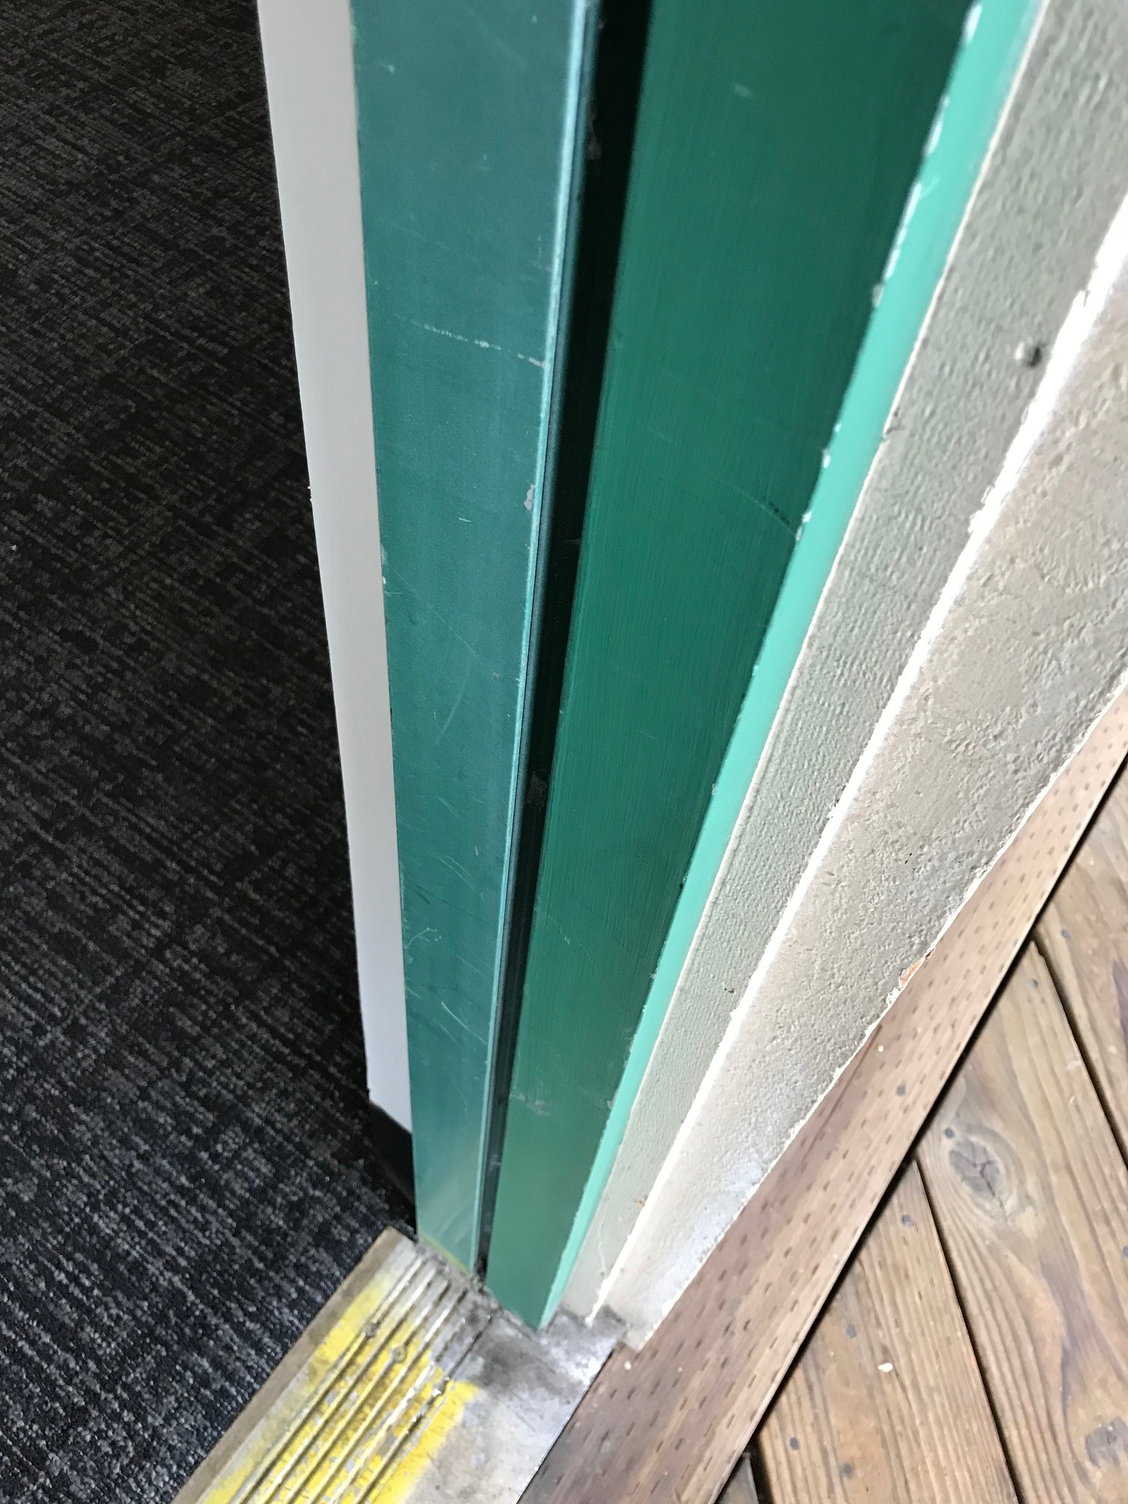 Metal door stop strip for metal door frame - DoItYourself.com Community  Forums